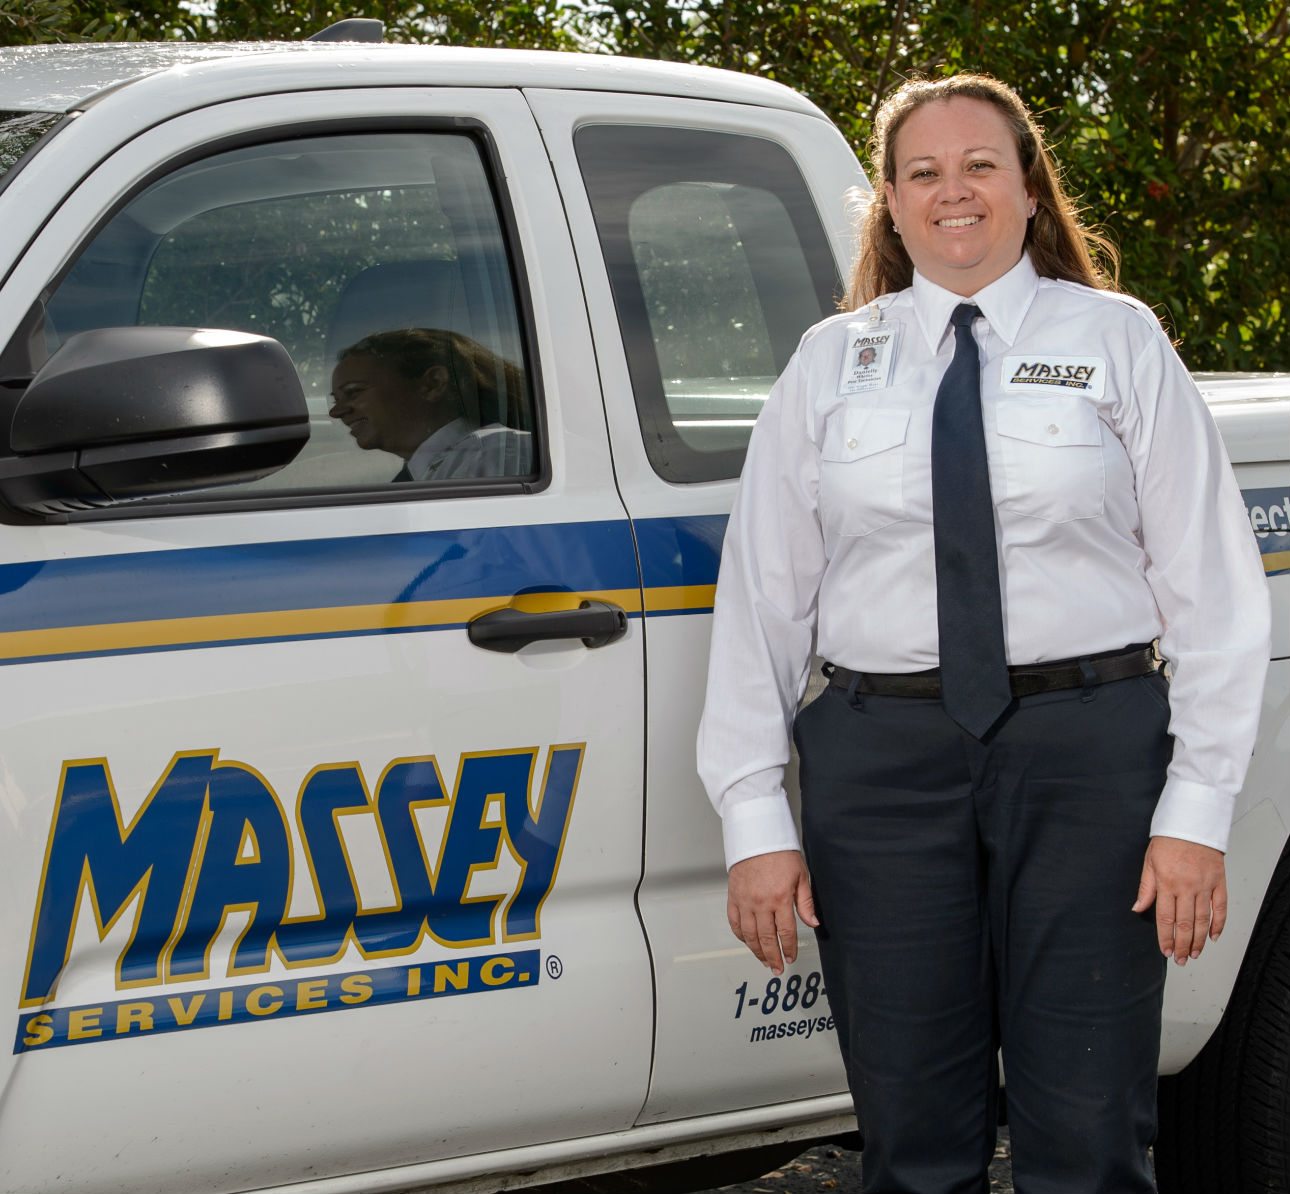 Massey Services Technician Wins Residential Pest Technician Award
